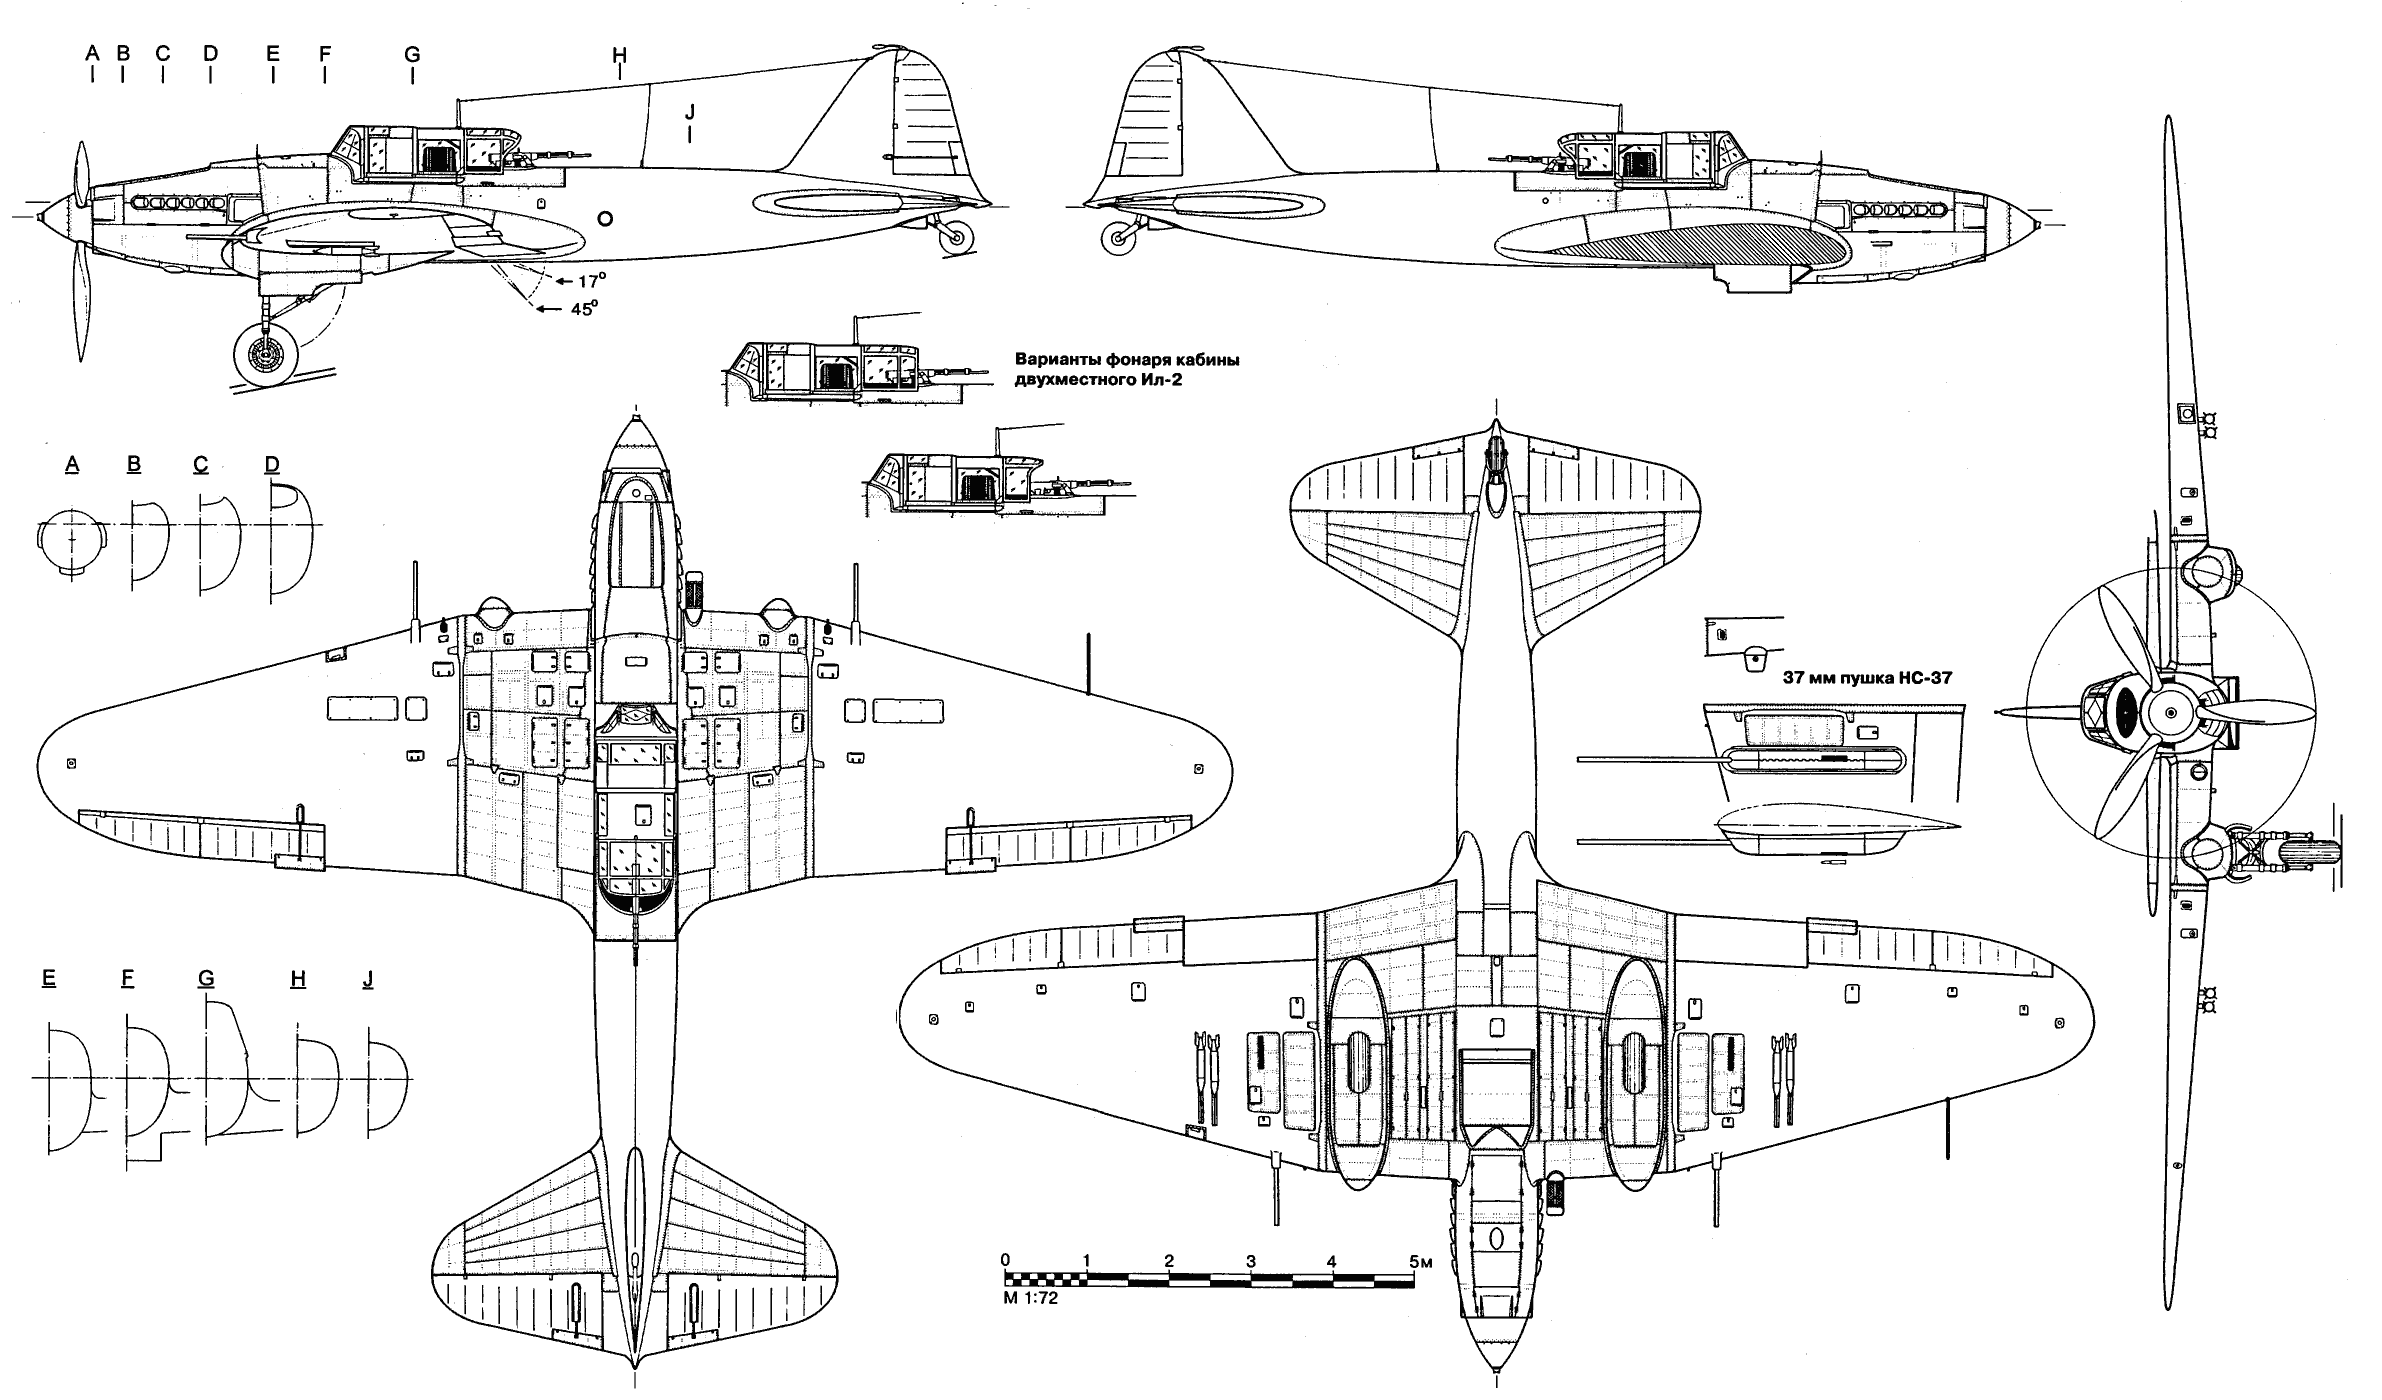 Почему не уместны сравнения двух самолетов периода второй мировой войны − ju-87и ил-2